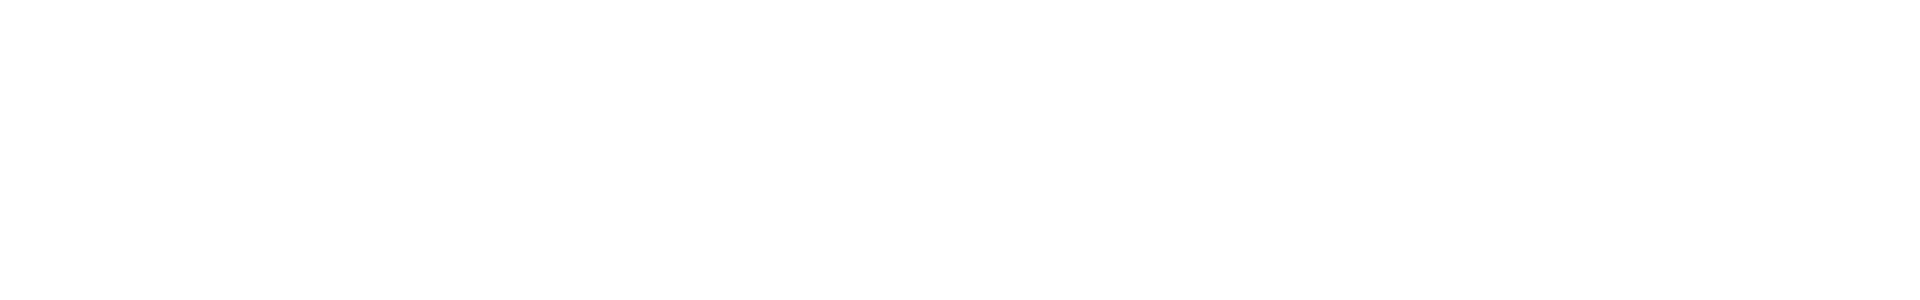 Трубочки, U-форма для упаковки типа «-Брик», форма «Слим», 200 мл, характеристики